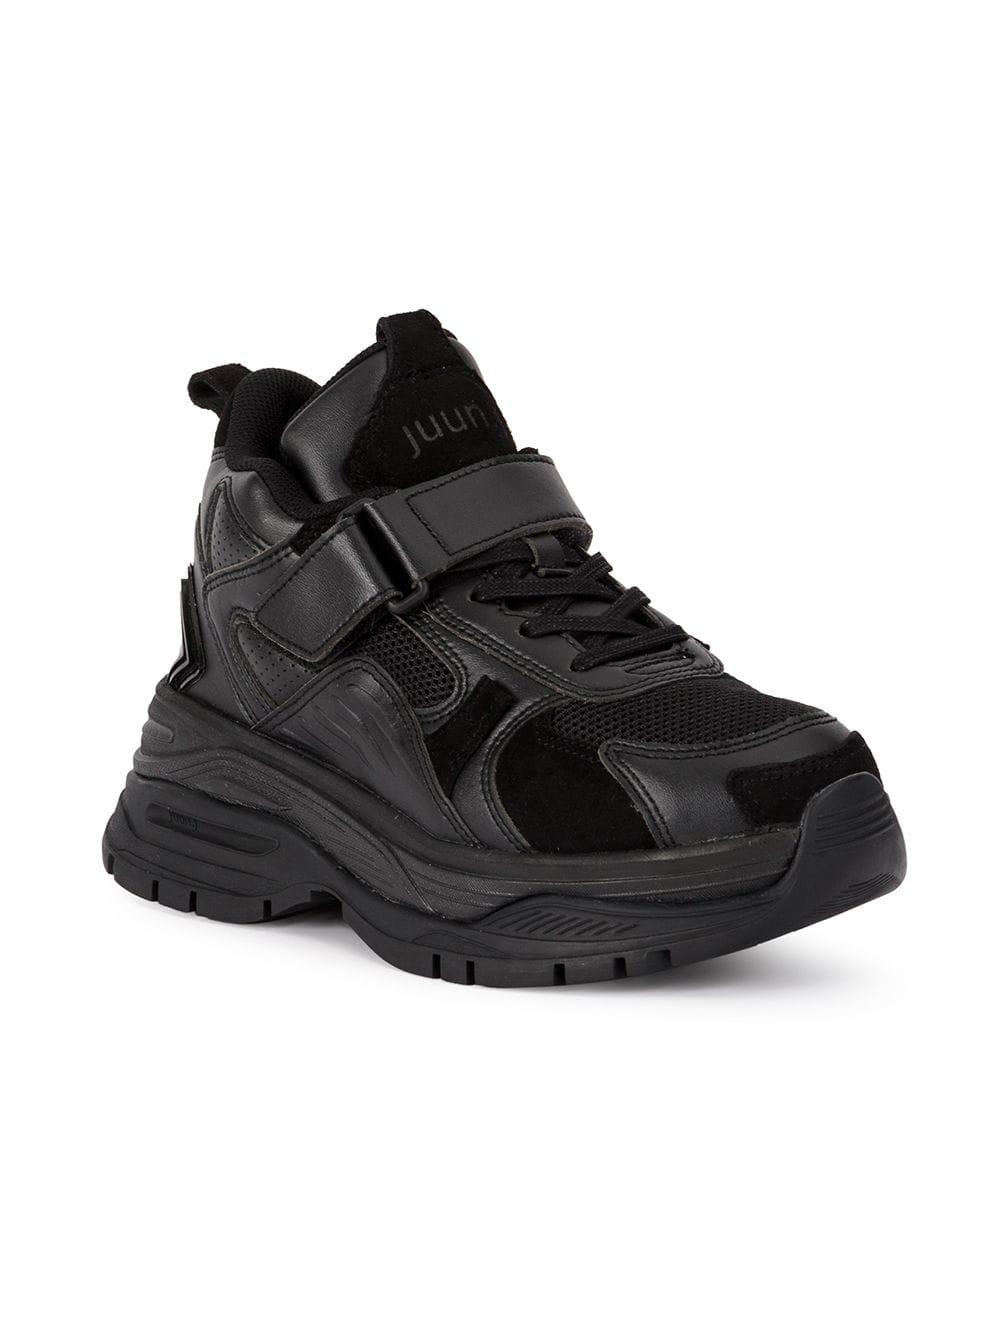 Juun.J Hi-top Sneakers in Black | Lyst